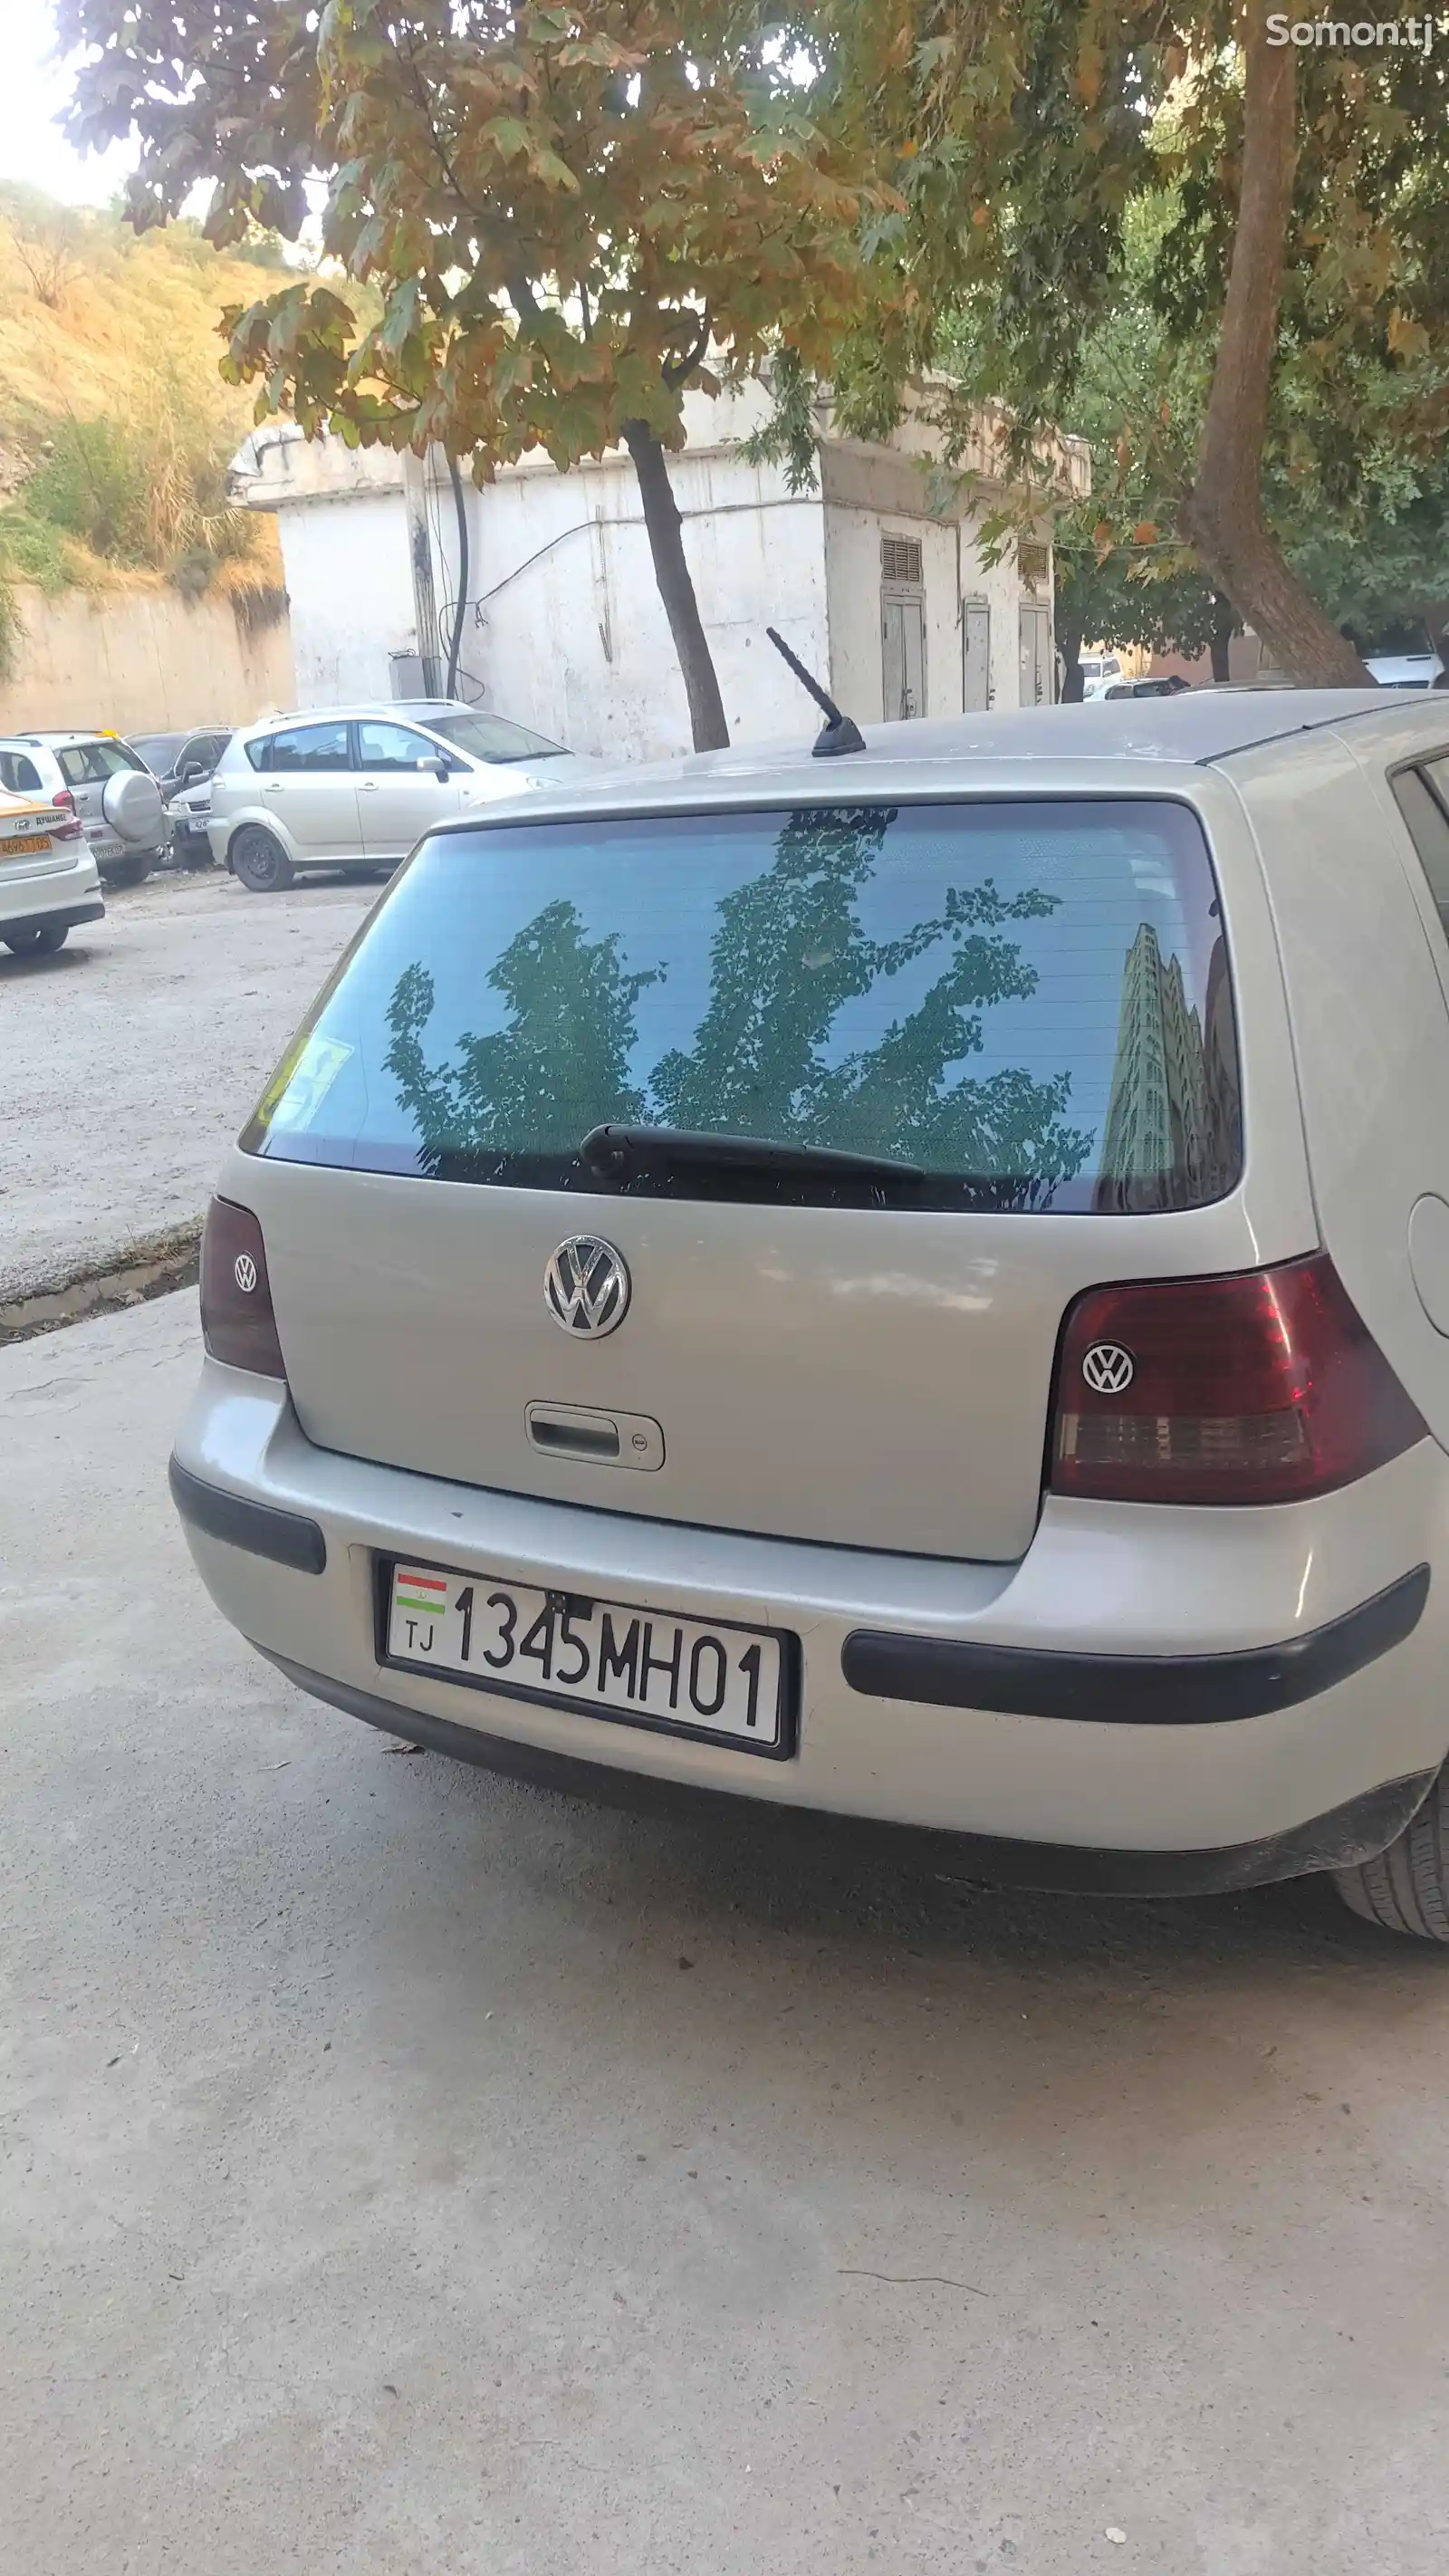 Volkswagen Golf, 2000-2